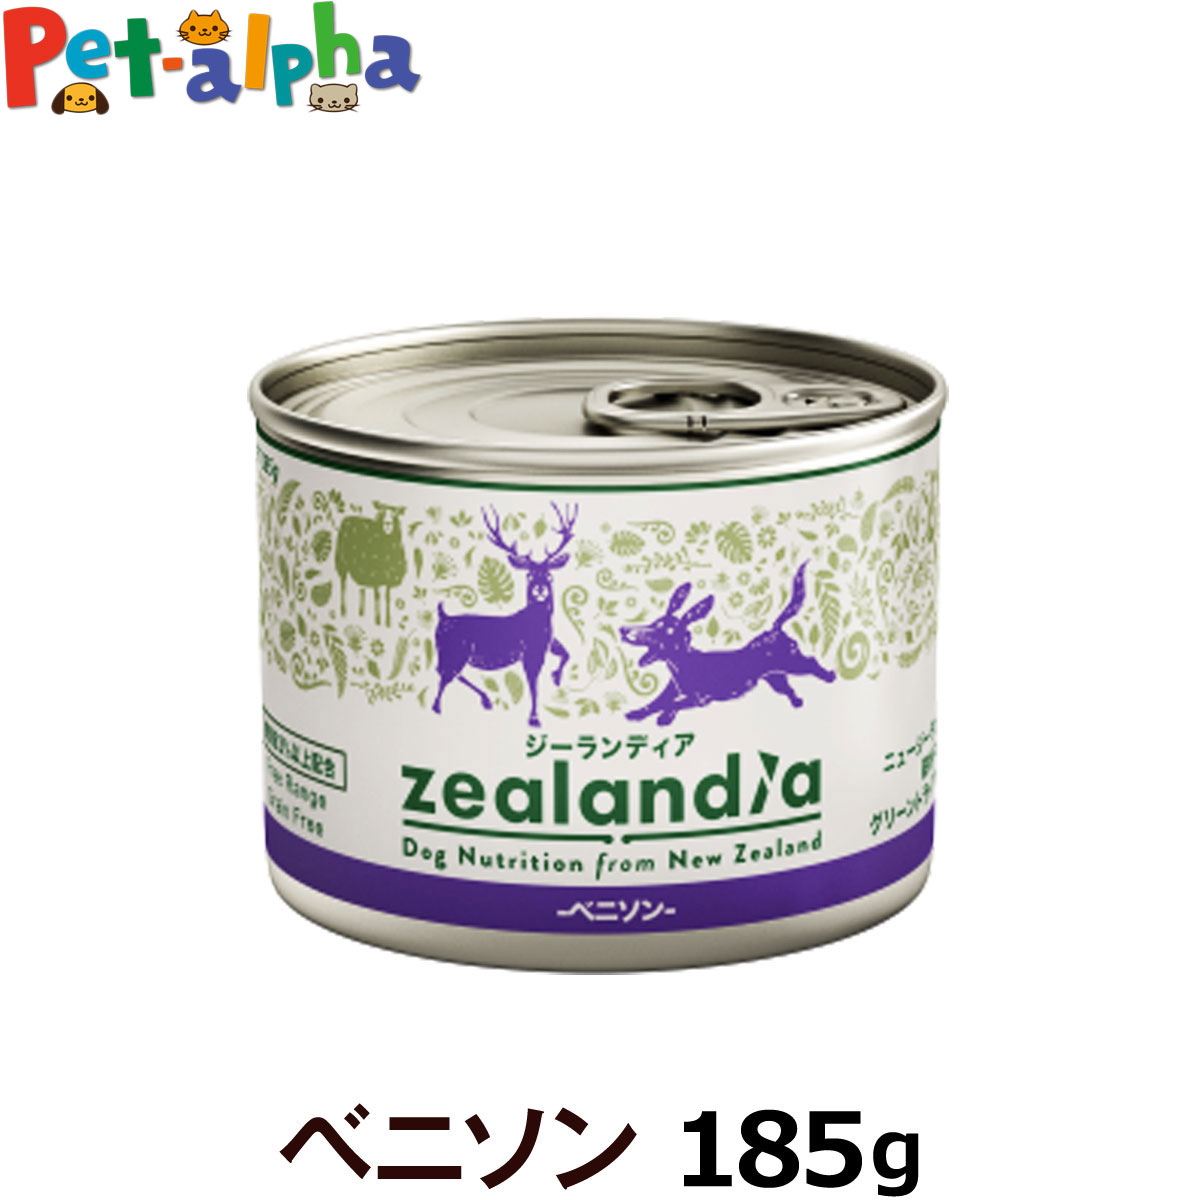 ジーランディア ドッグ缶 ベニソン185g(ウェットフード 犬 缶詰 成犬用 総合栄養食 Zealandia)